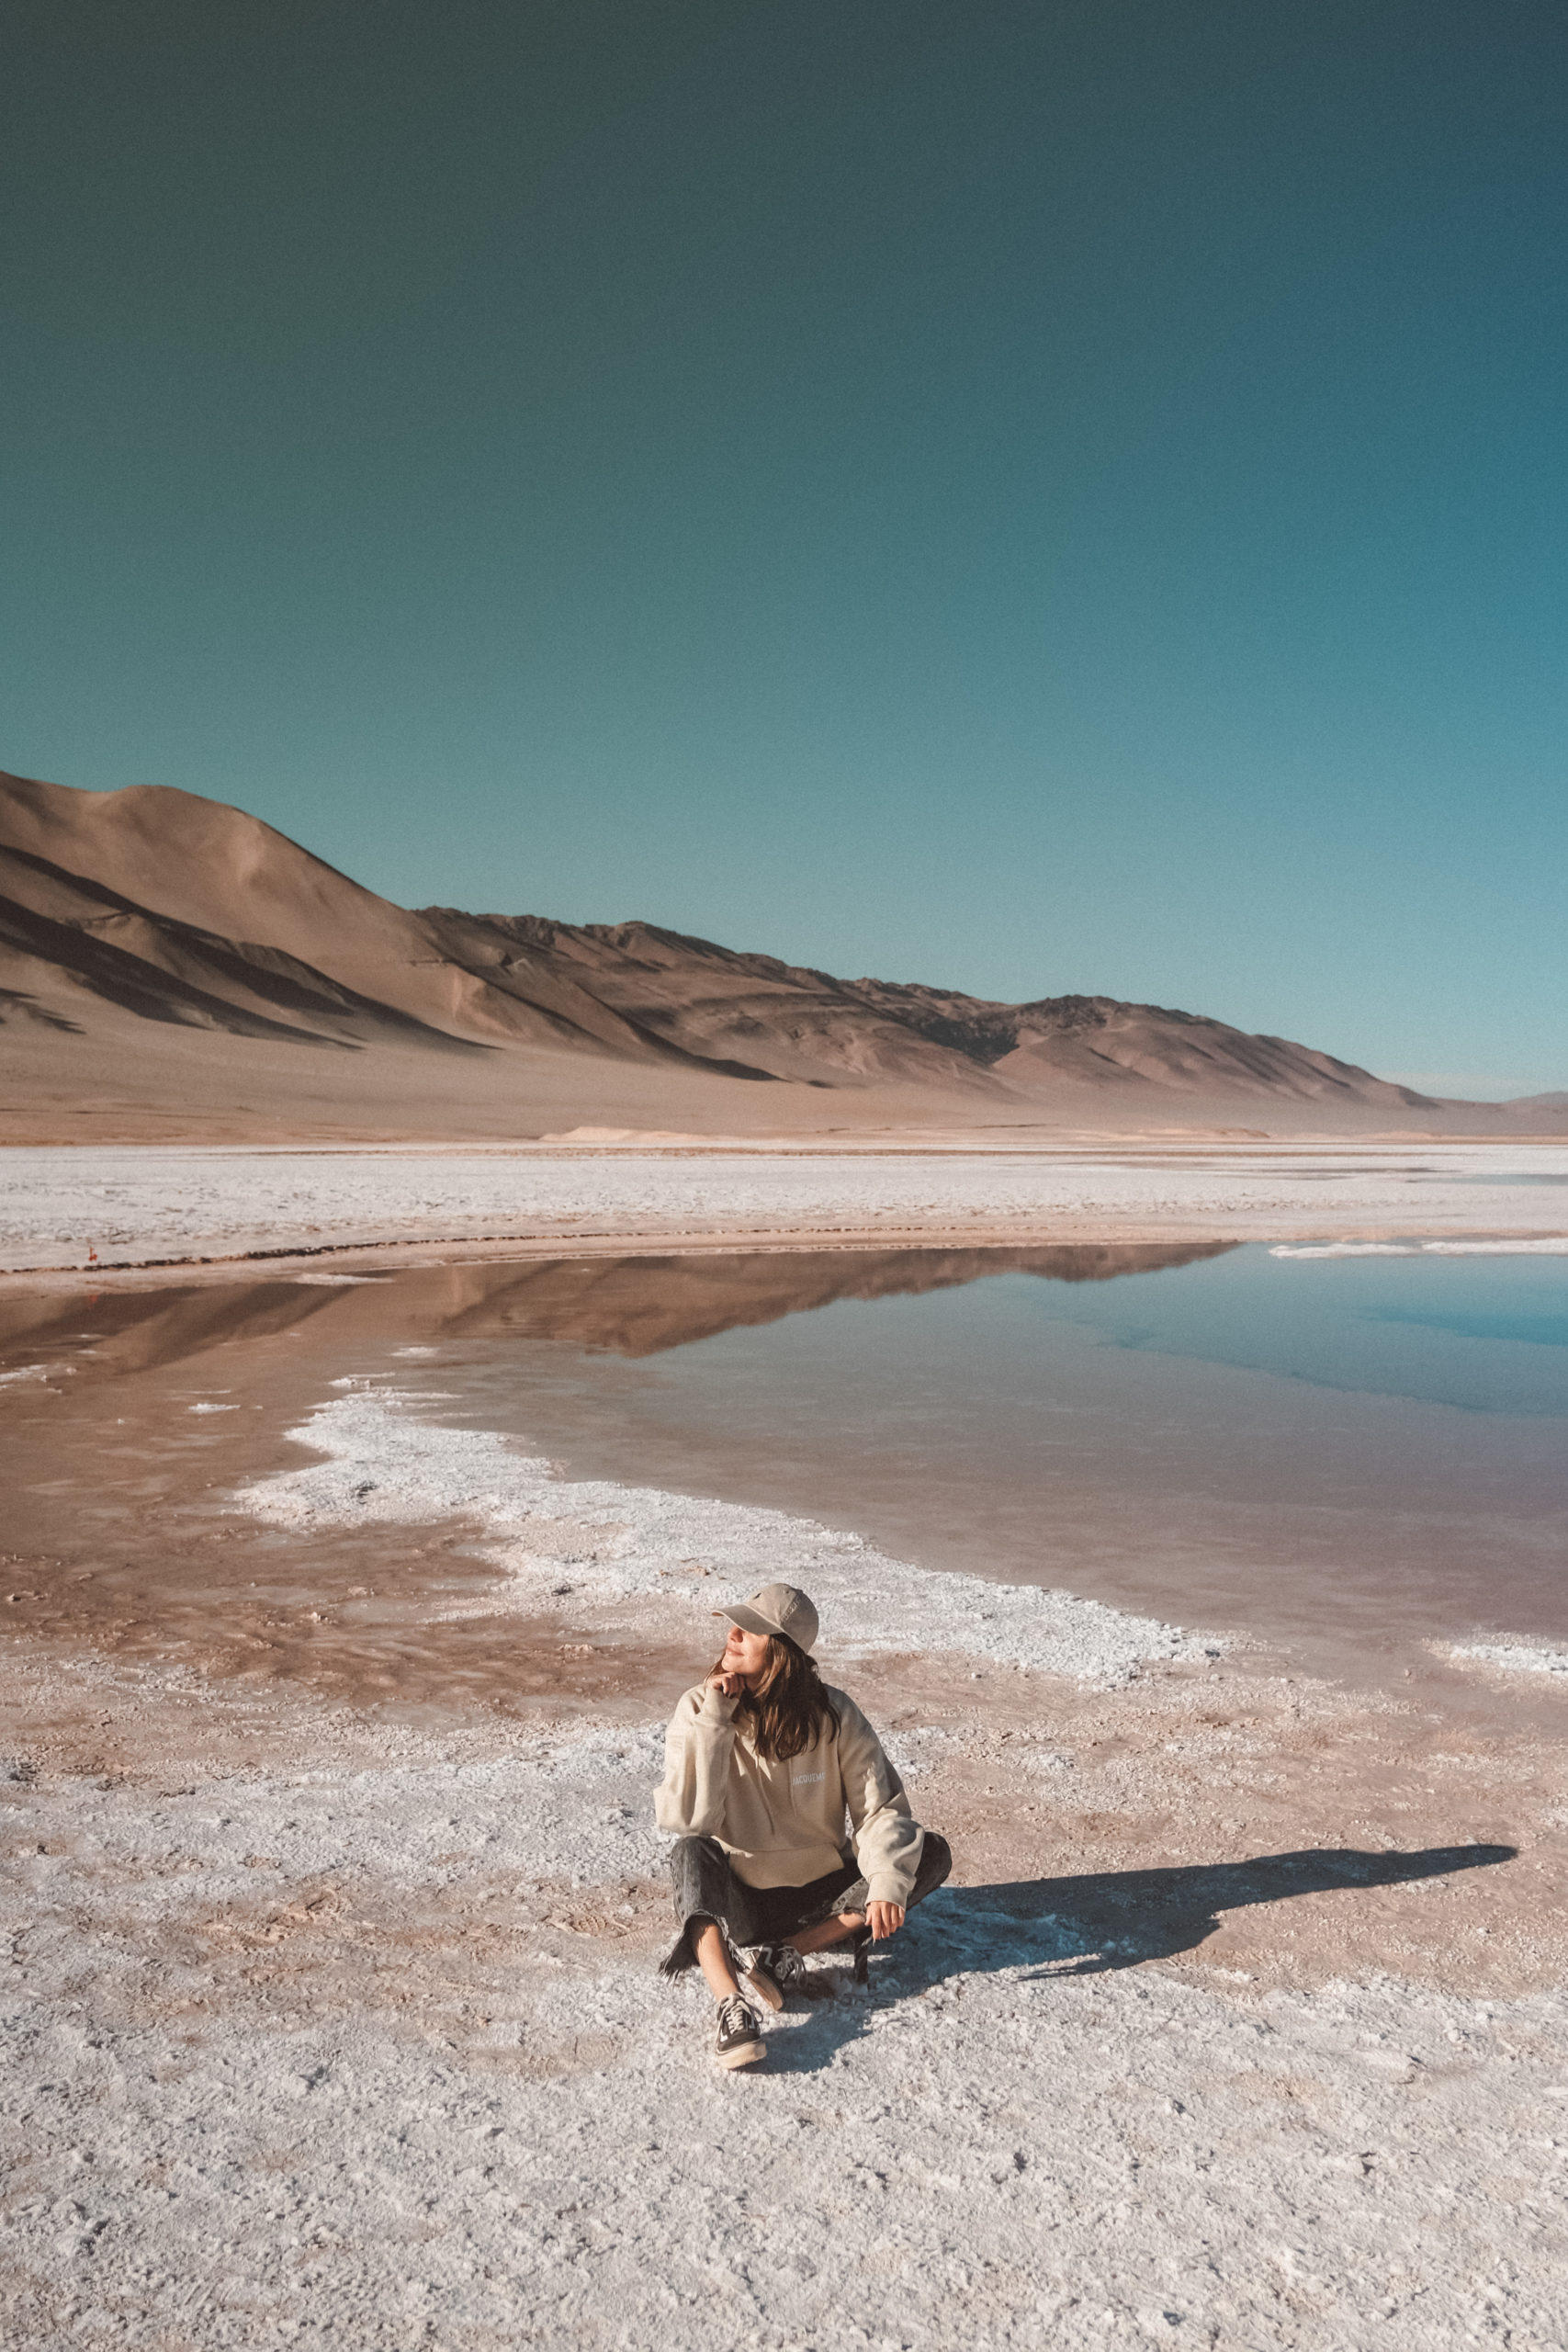 désert de sel argentine